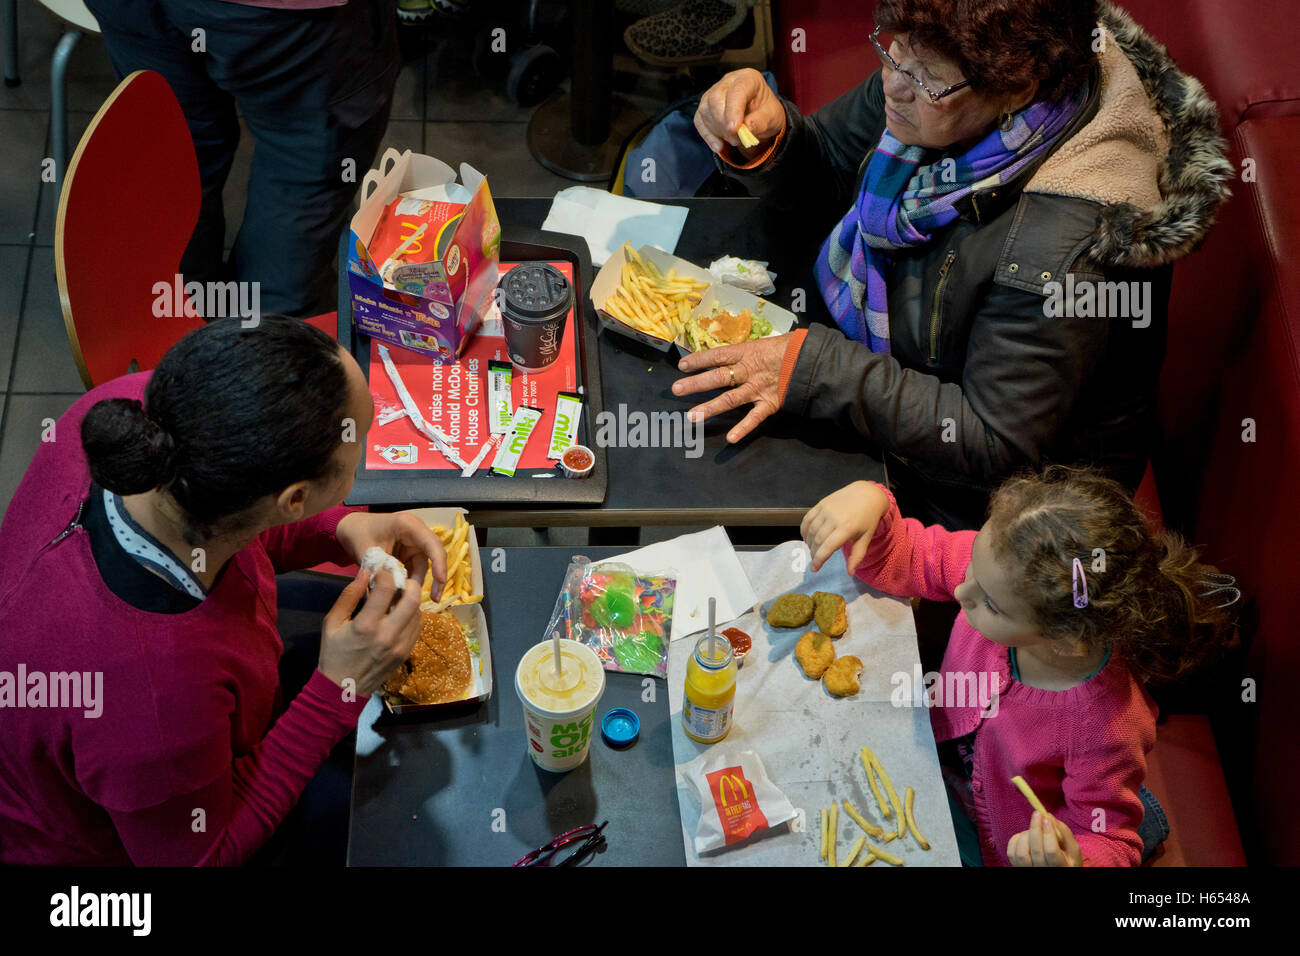 Manger à la famille un McDonald's restaurant fast food à Londres.UK Banque D'Images